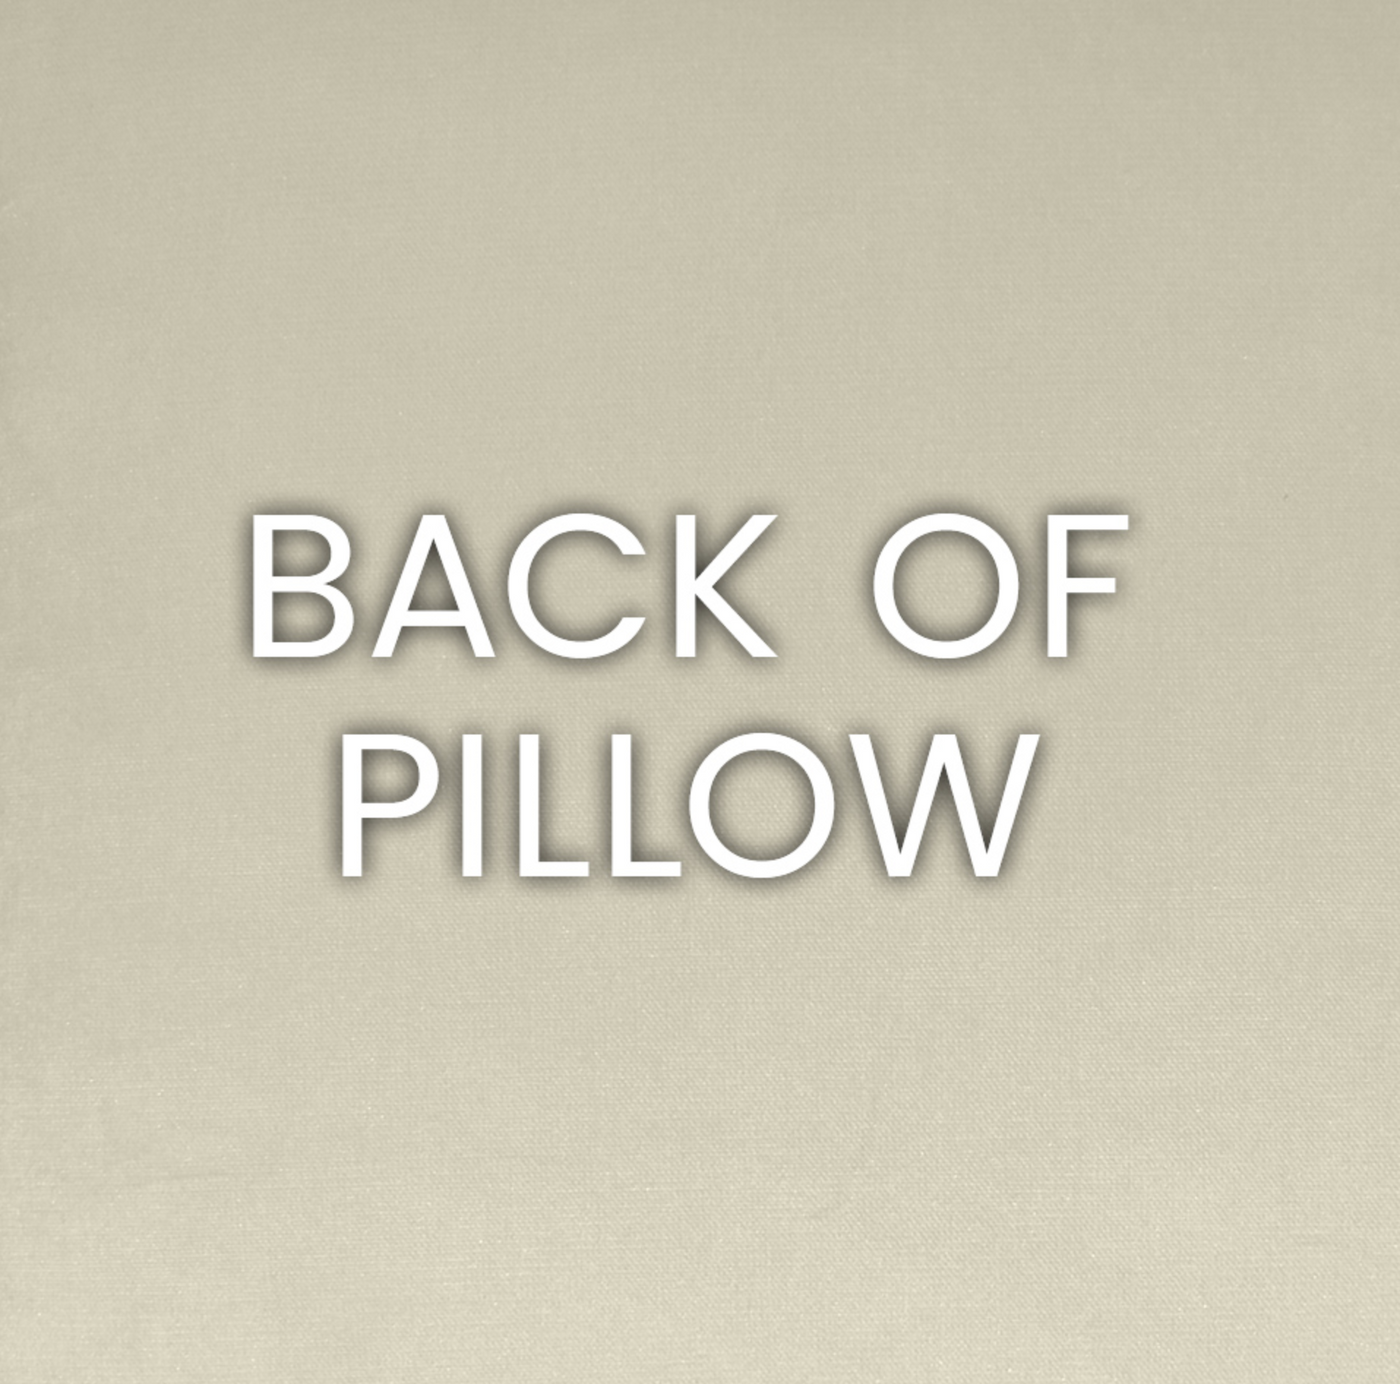 Prospero Pillow